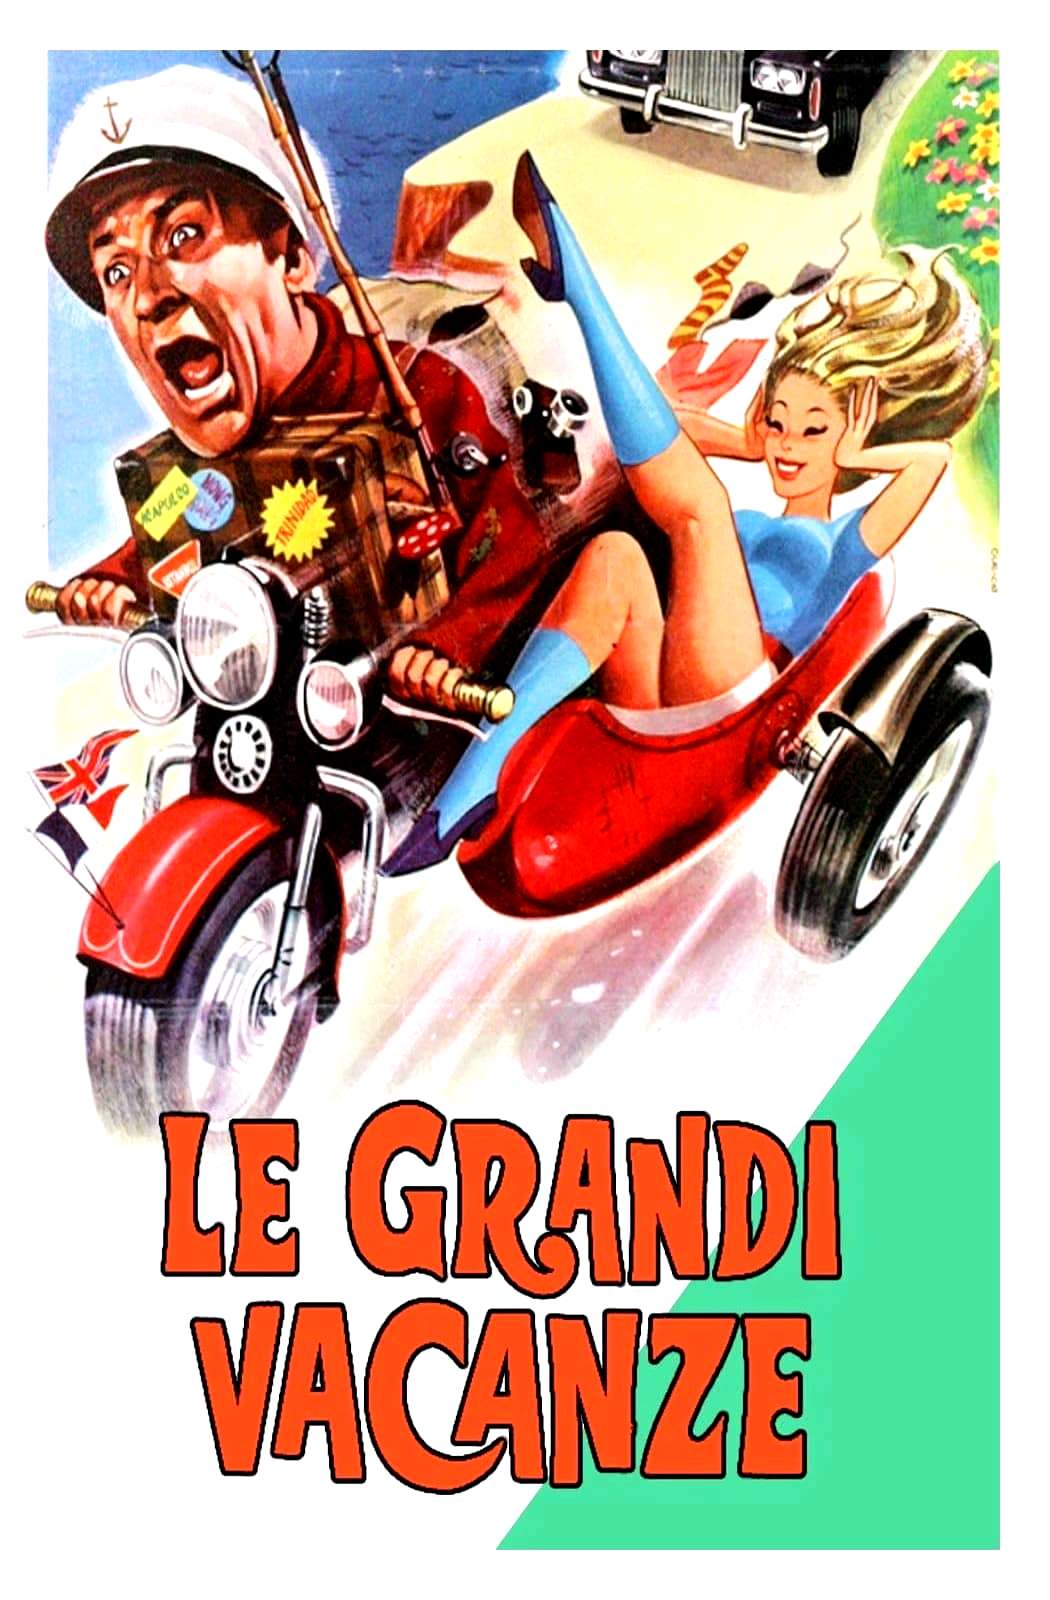 Le grandi vacanze [HD] (1967)